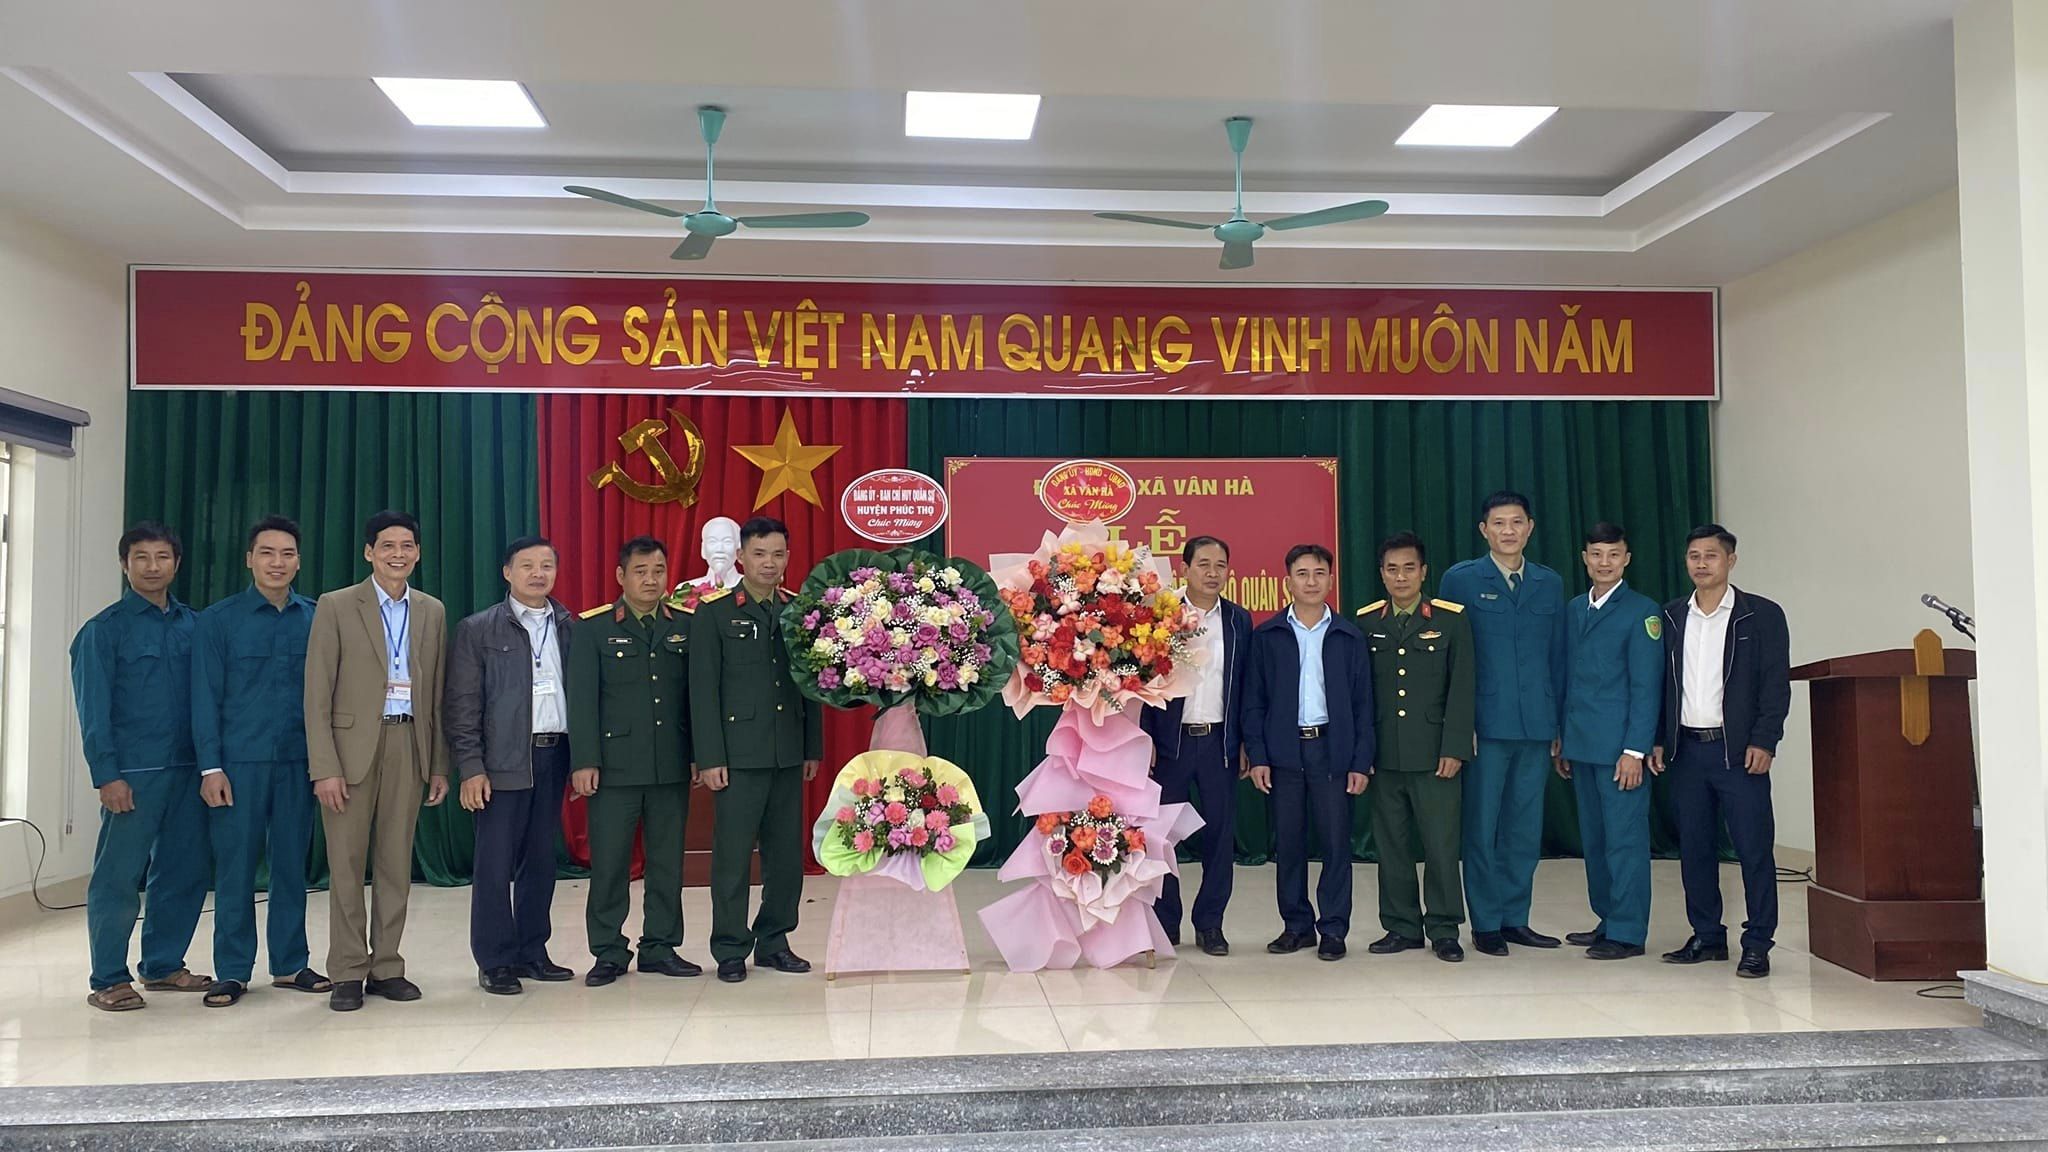 Đảng ủy xã Vân Hà lòng trọng tổ chức Lễ công bố Quyết định thành lập chi bộ Quân sự xã